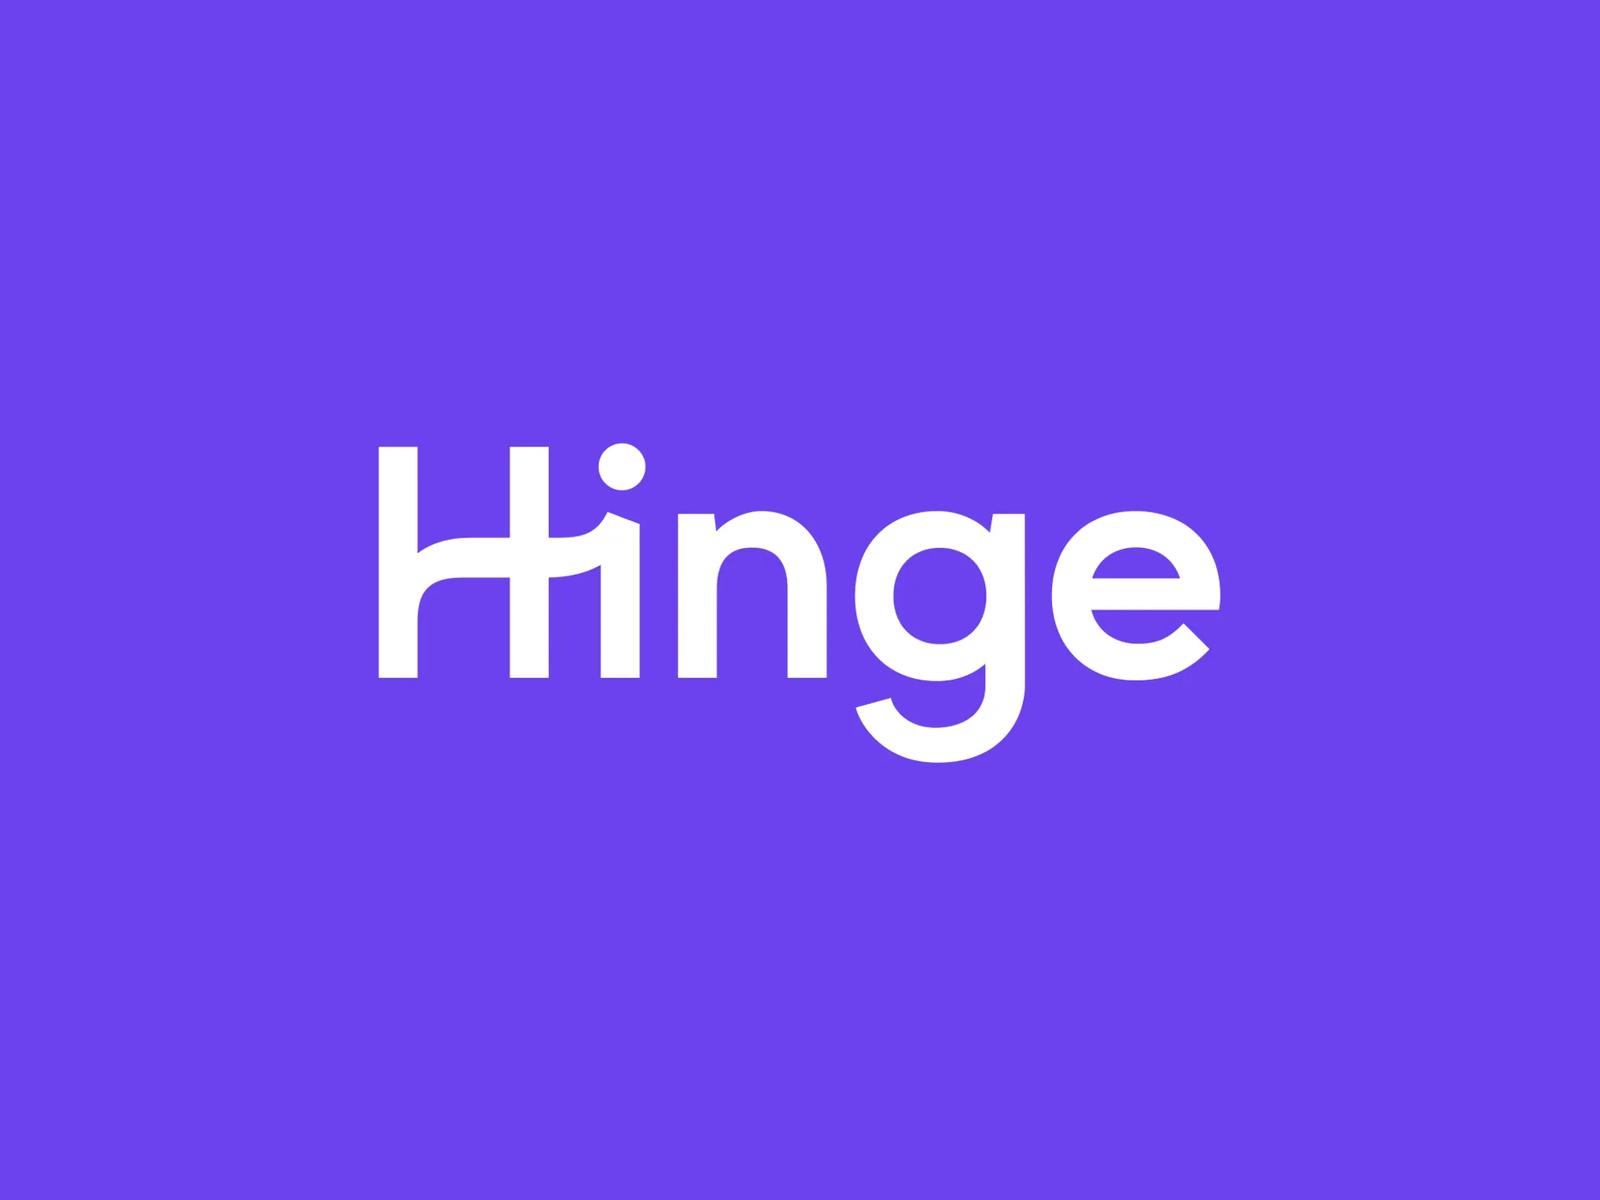 Hinge App Design